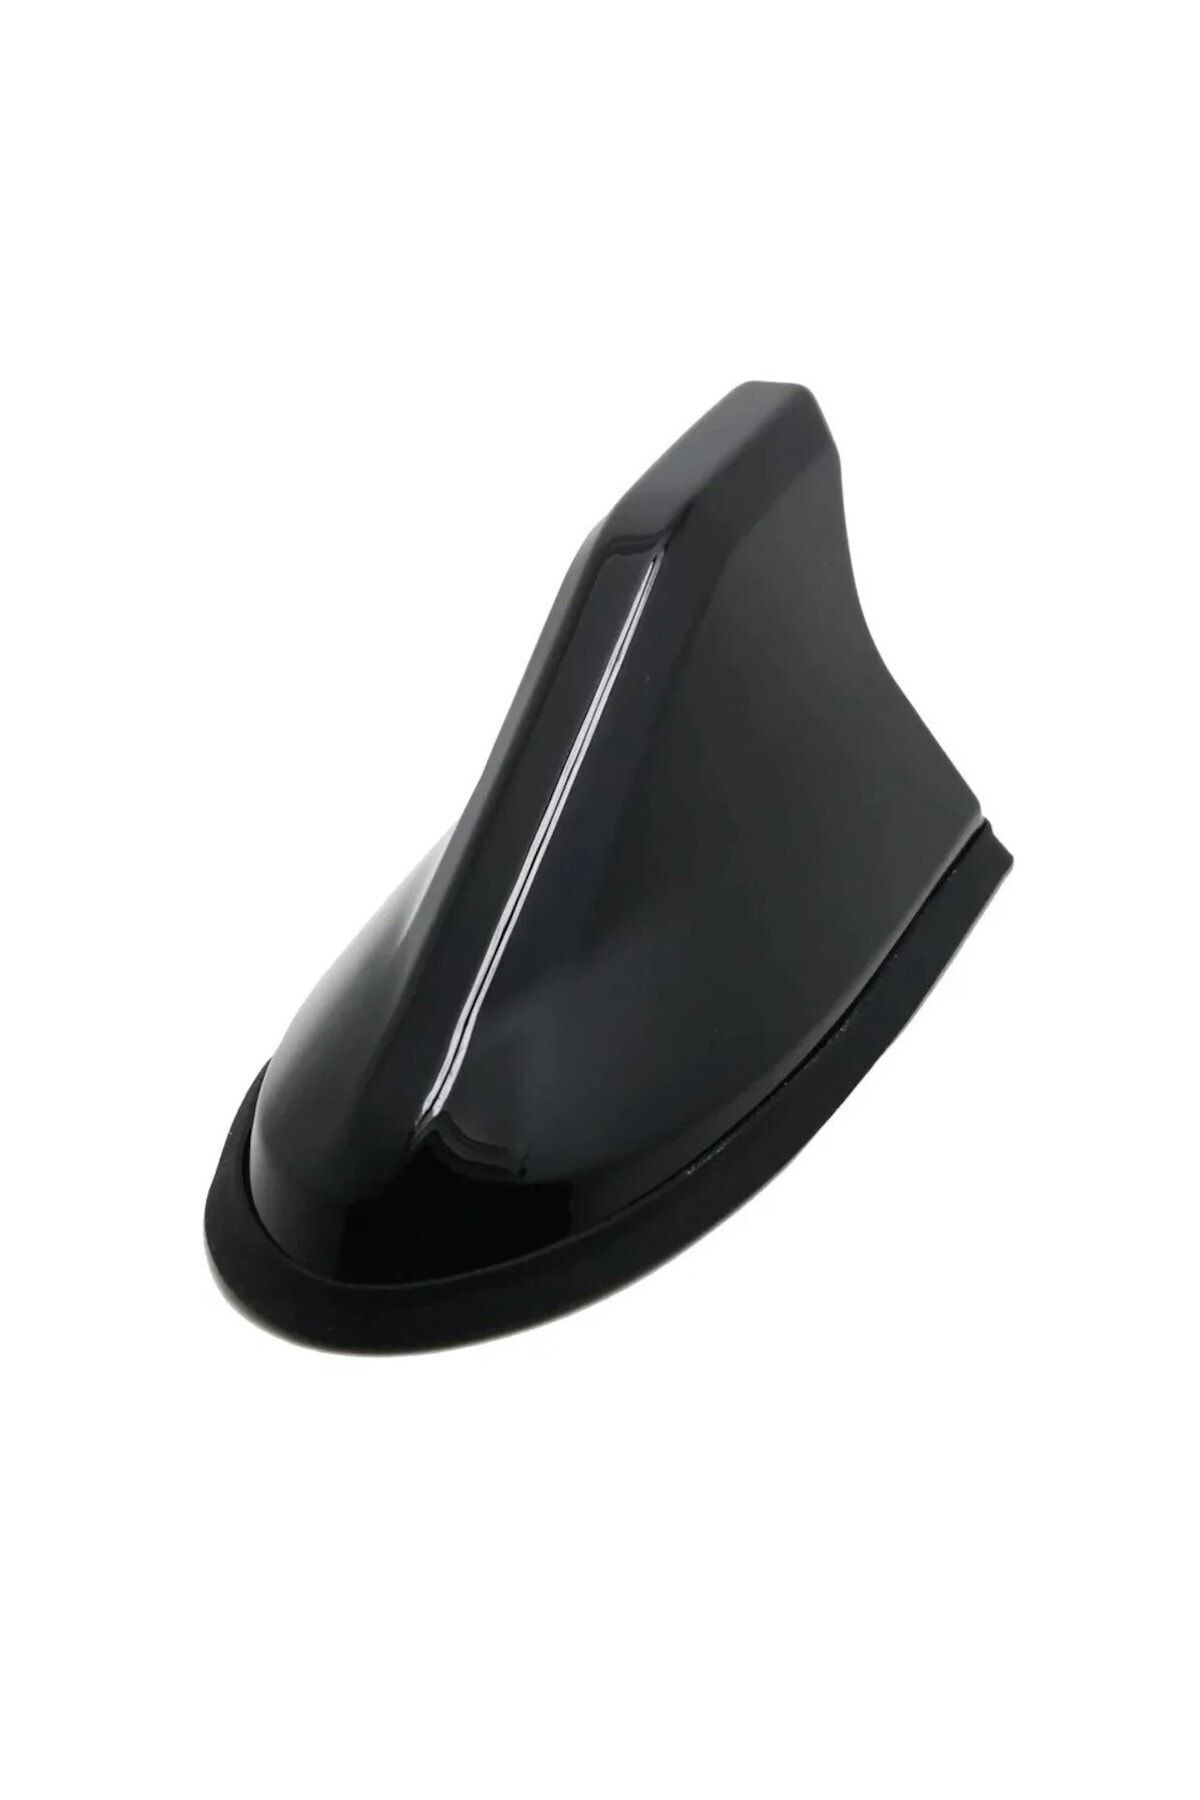 GARDENAUTO Peugeot 2008 2012-2019 Uyumlu Silikon Tabanlı Siyah Köpekbalığı Balina Tavan Anteni